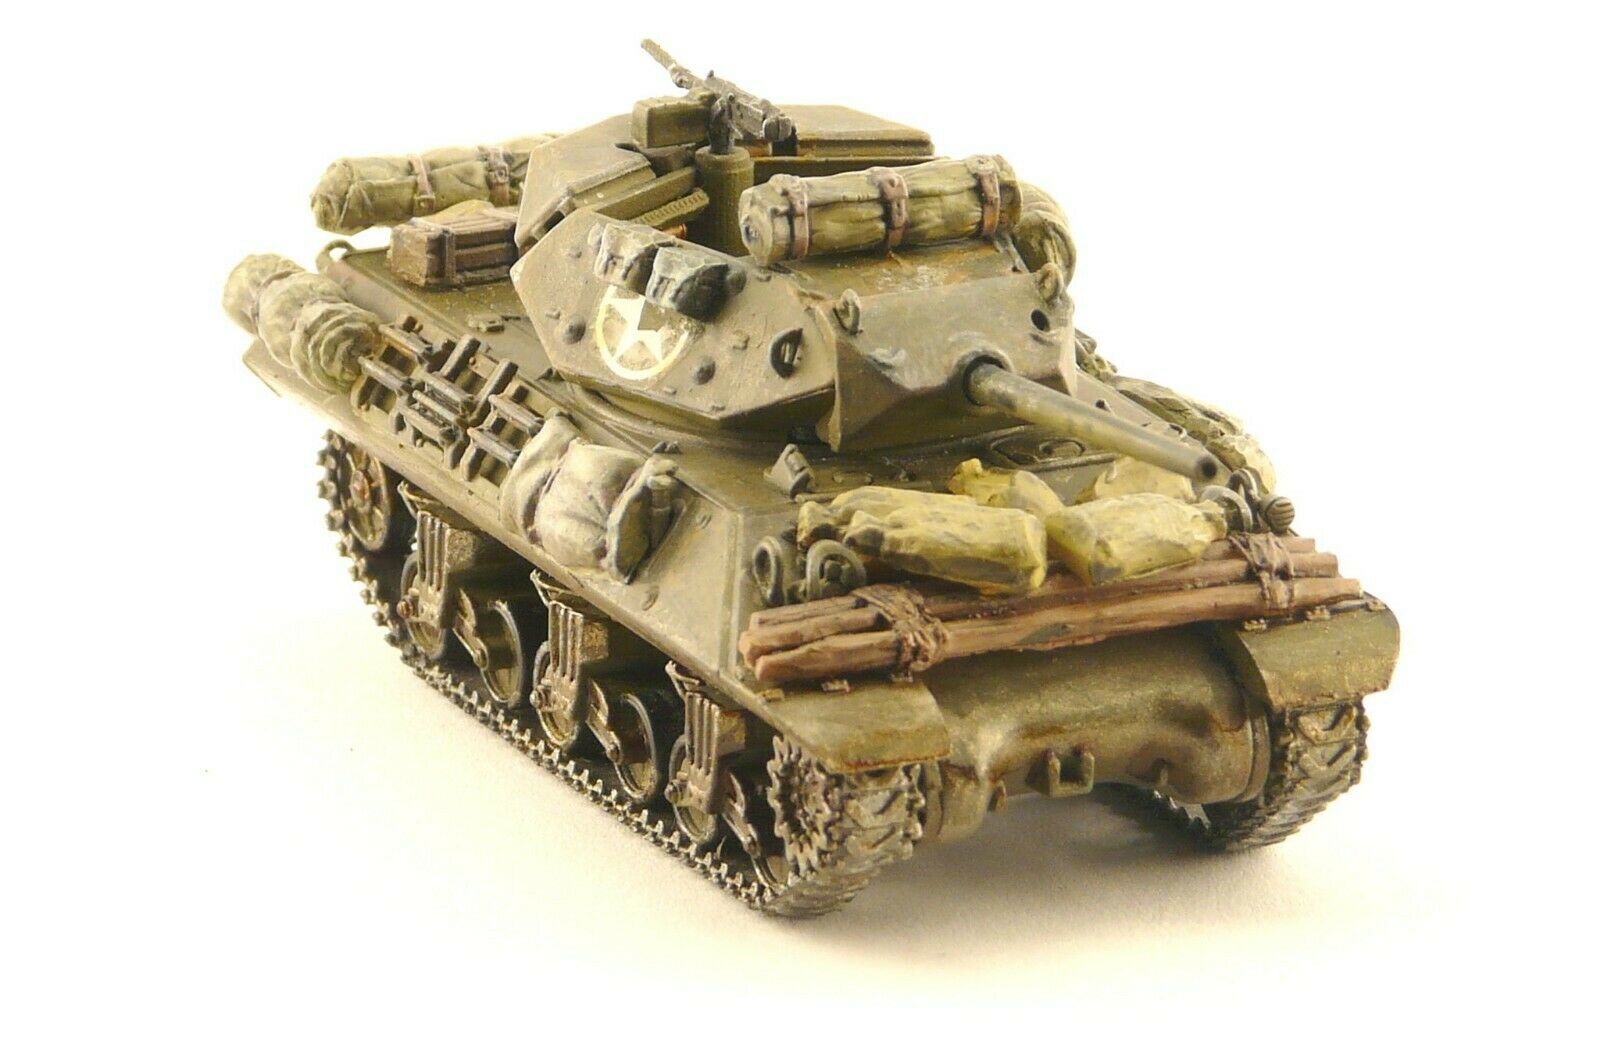 Redog 1:72 Churchill Tank - Scale Modelling Stowage kit